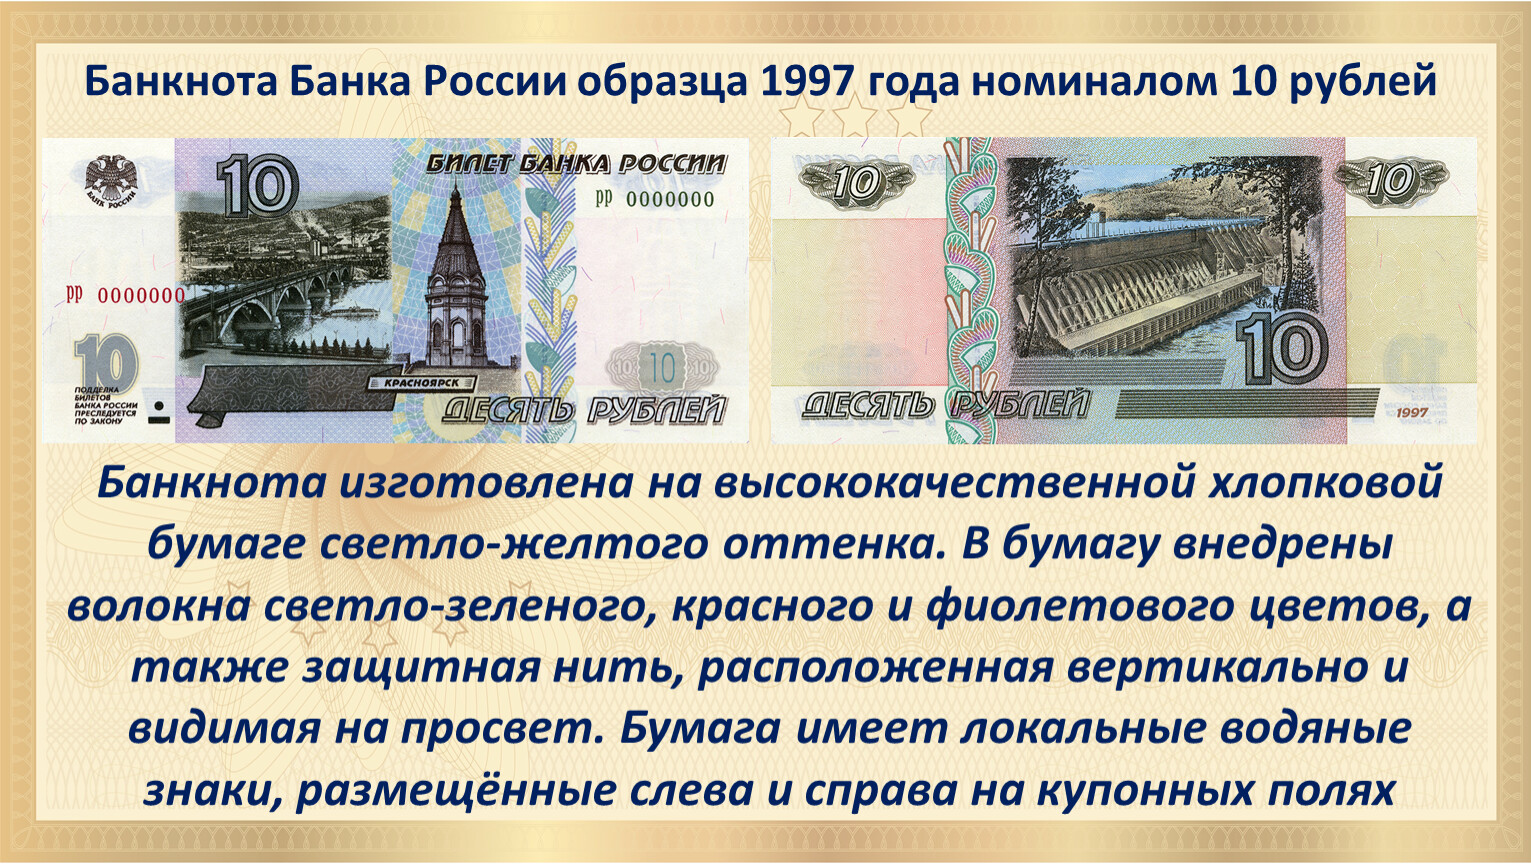 Рубль образца 1997. Самая маленькая купюра в России. Размер денежной купюры. Лицевая сторона денежной купюры.